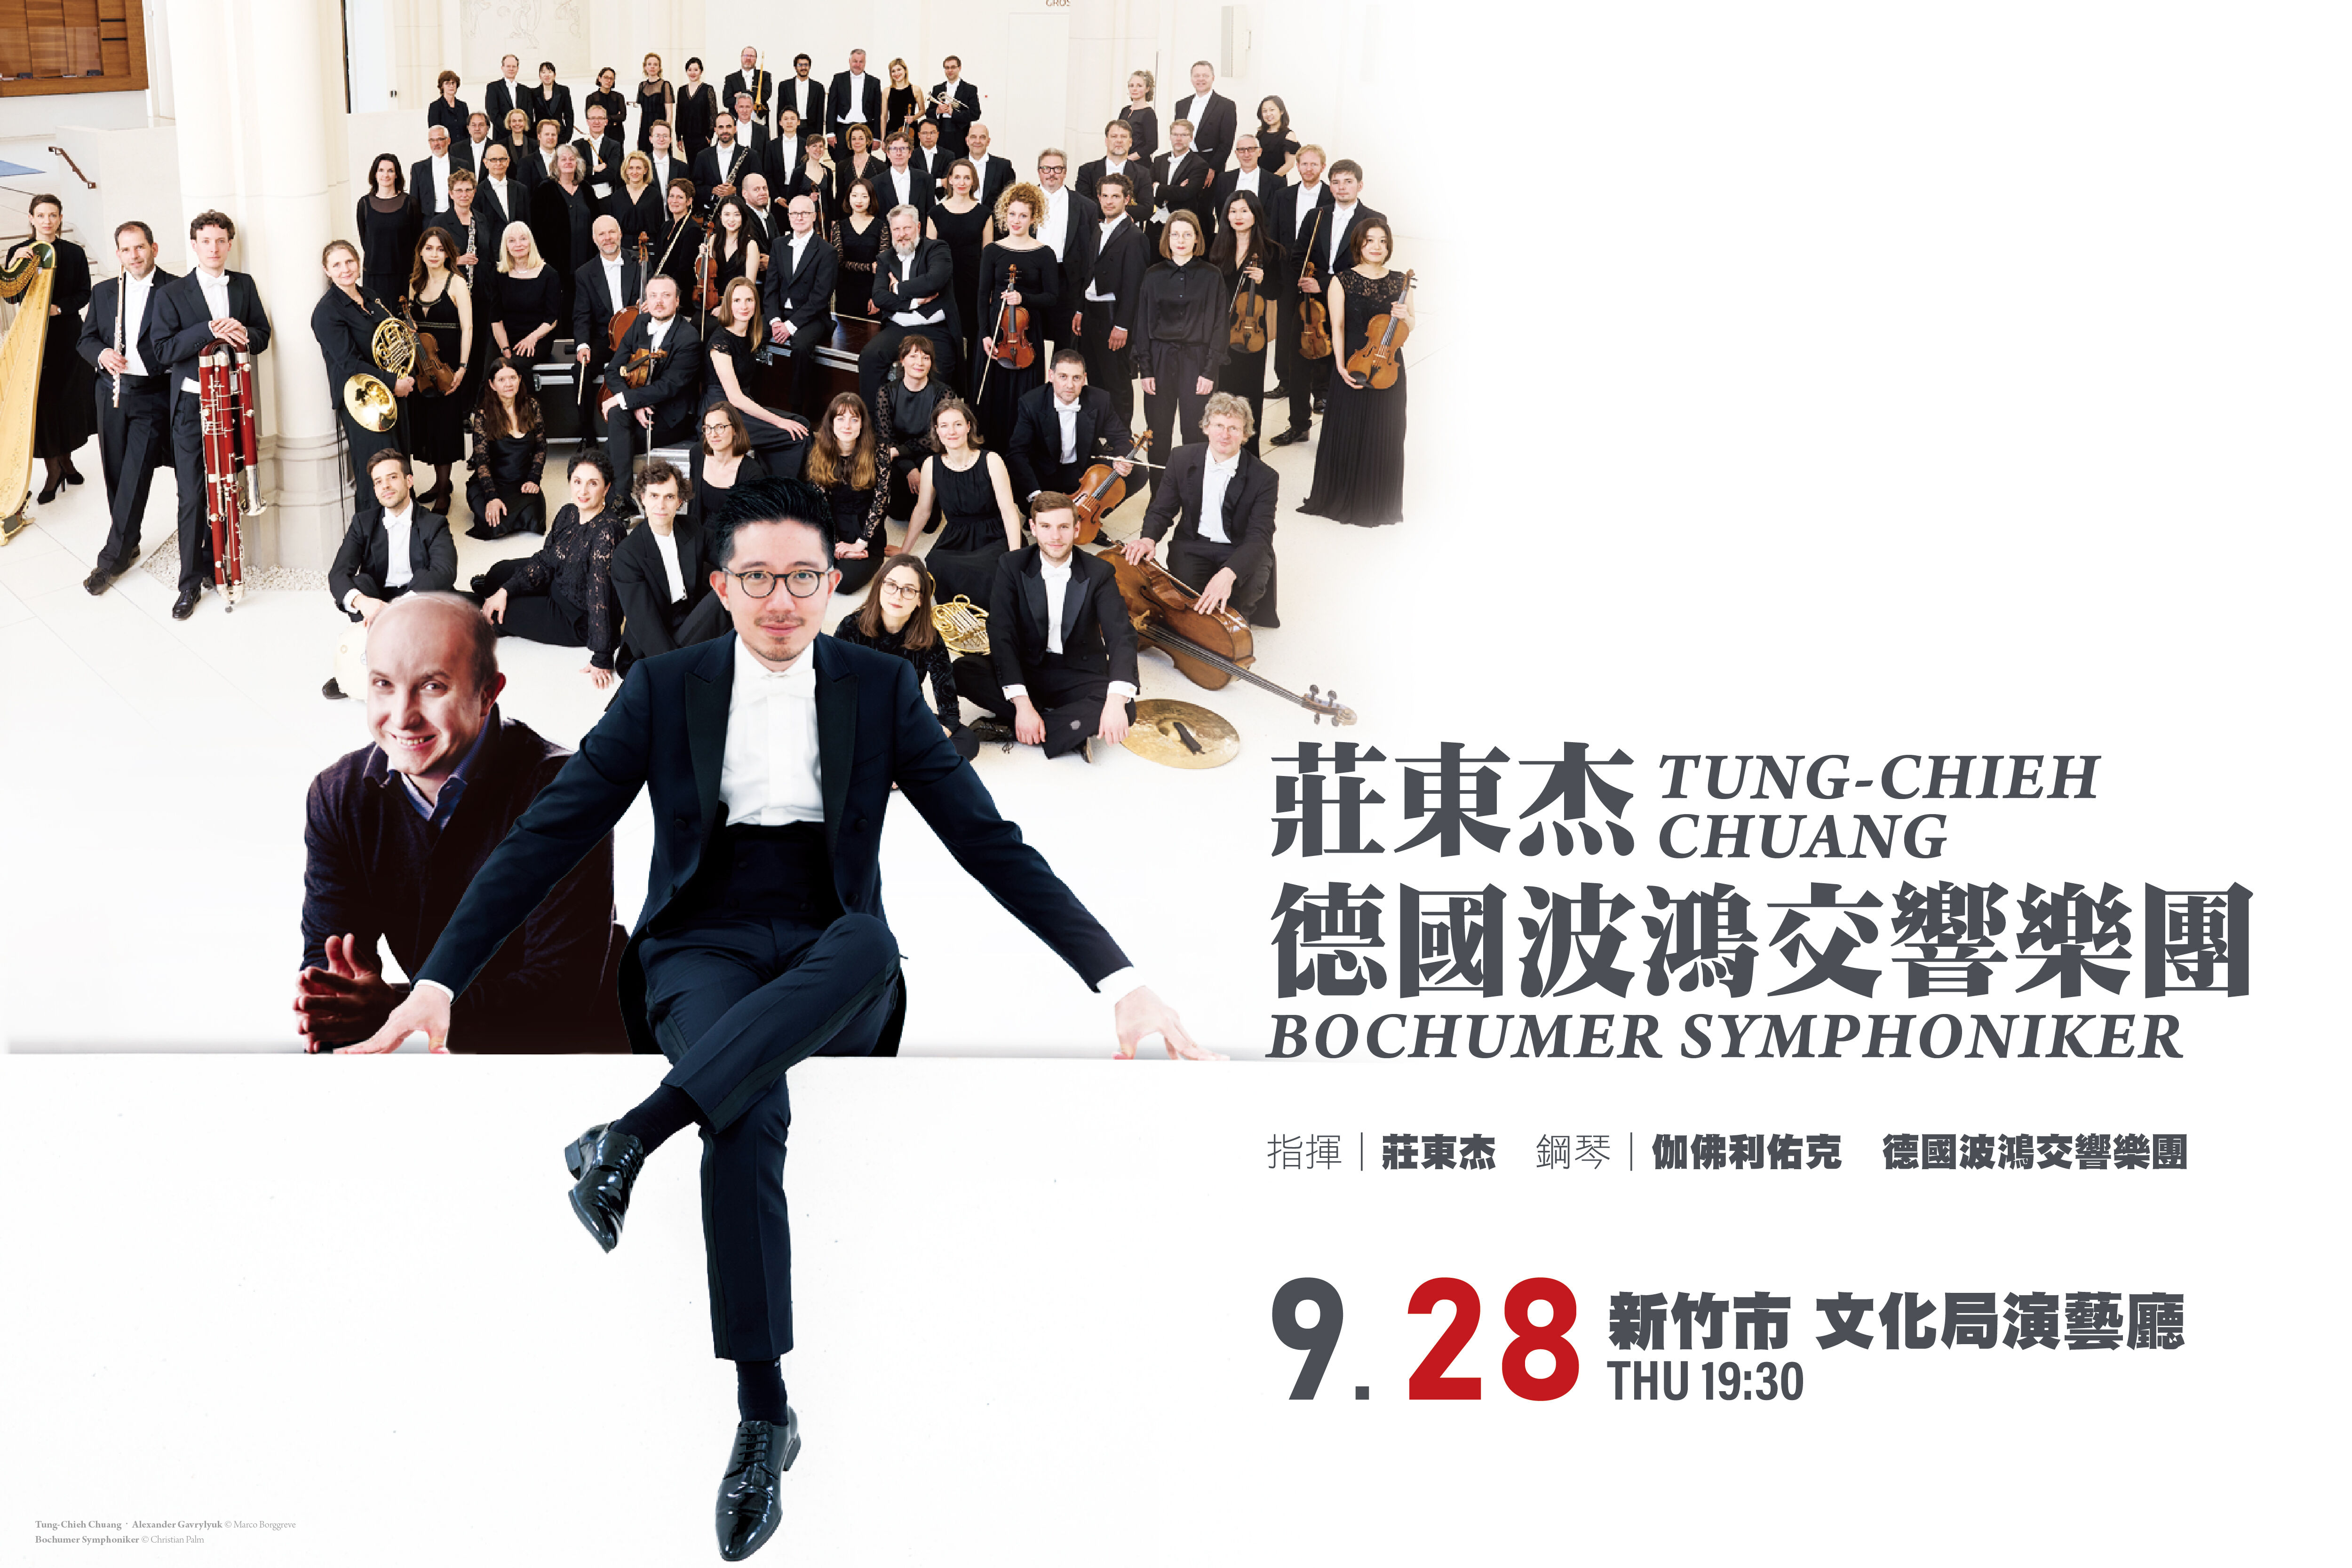 「莊東杰與德國波鴻交響樂團」音樂會，9月28日晚上7時30分將在新竹市文化局演藝廳盛大登場